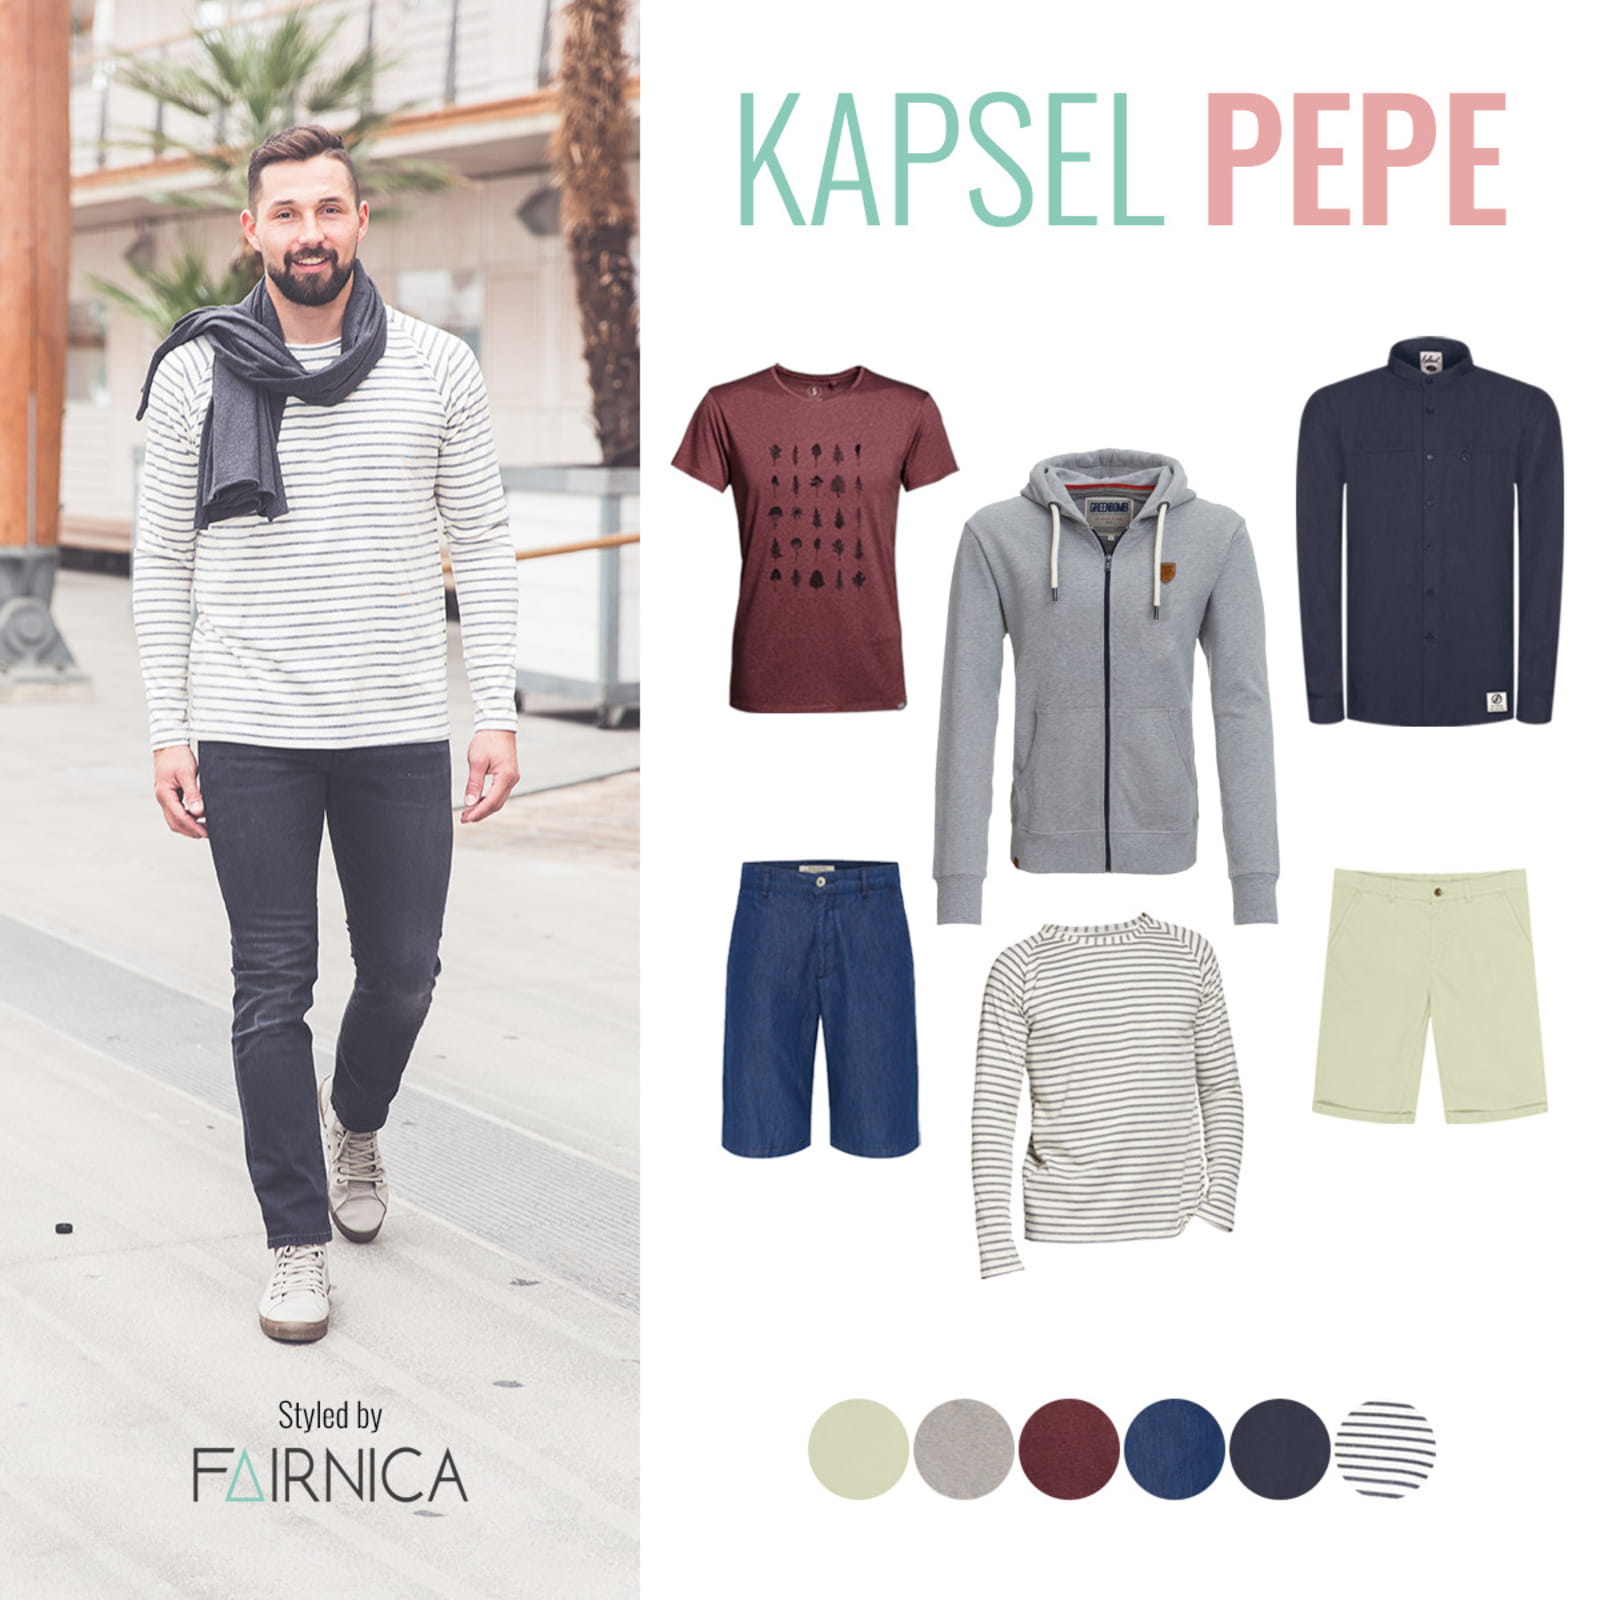 Übersicht aller Kleidungsstücke aus Kapsel Pepe rechts im Bild. Links steht ein männliches Model, das eine schwarze Jeans, den Pulli aus Kapsel Pepe und einen Schal trägt.